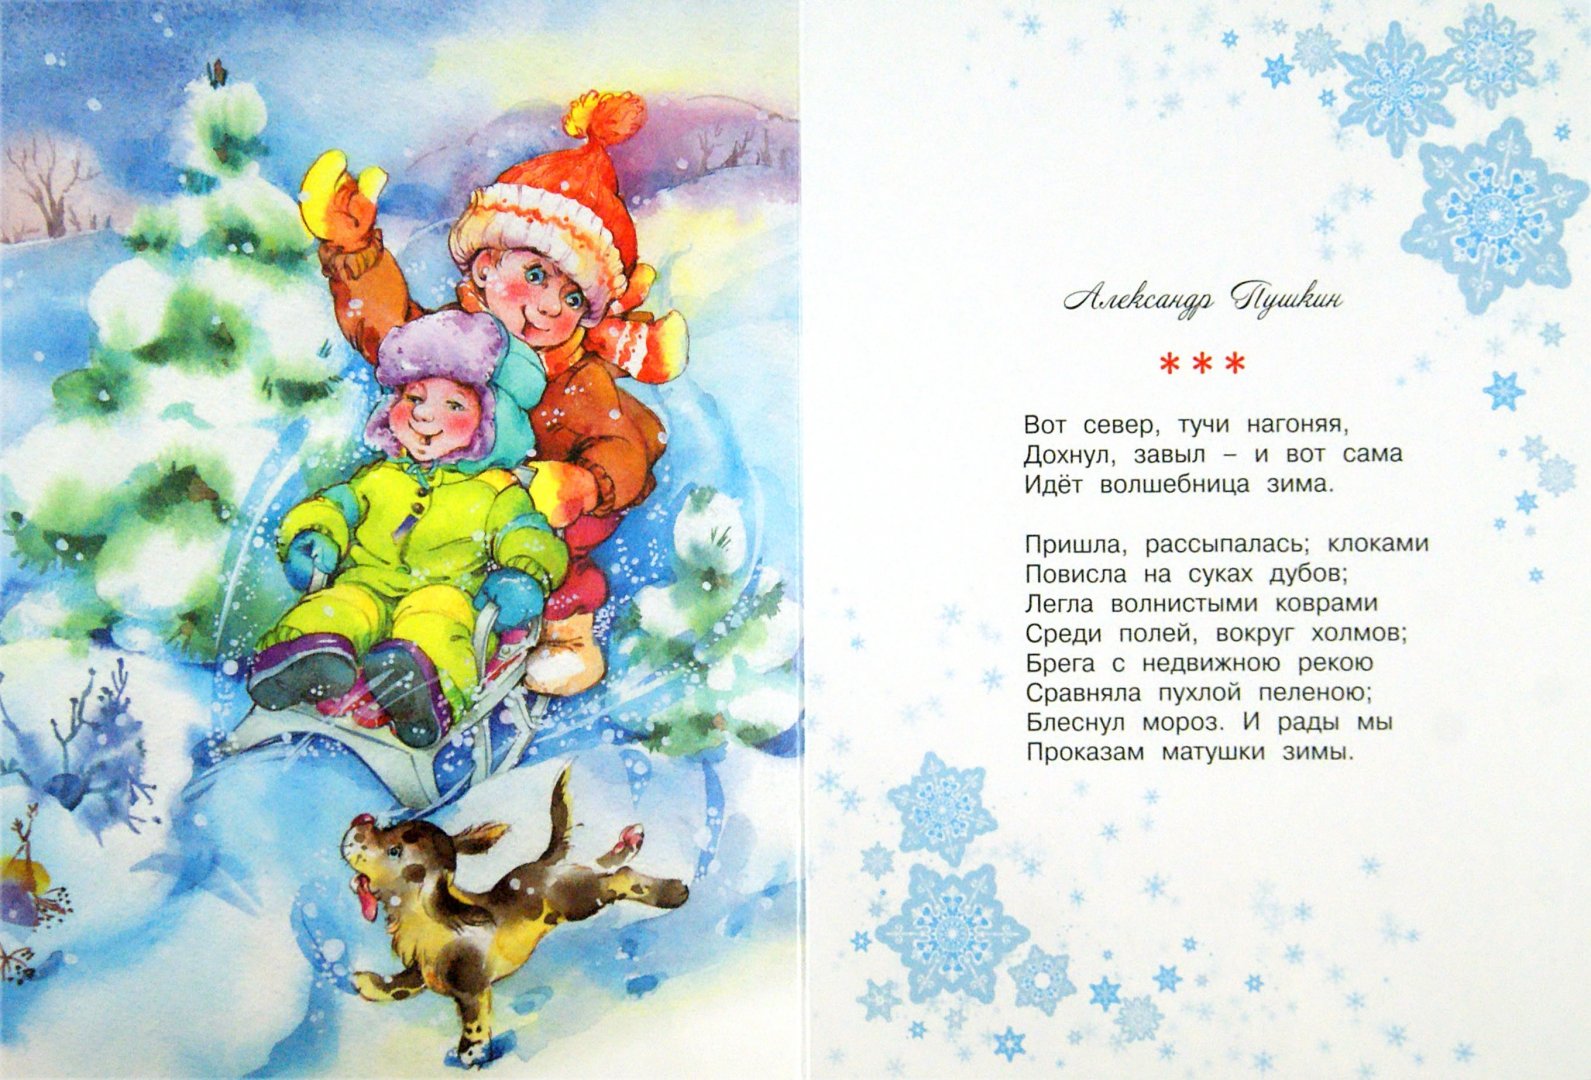 Иллюстрация 1 из 8 для Волшебница зима - Пушкин, Козлов, Мошковская | Лабиринт - книги. Источник: Лабиринт